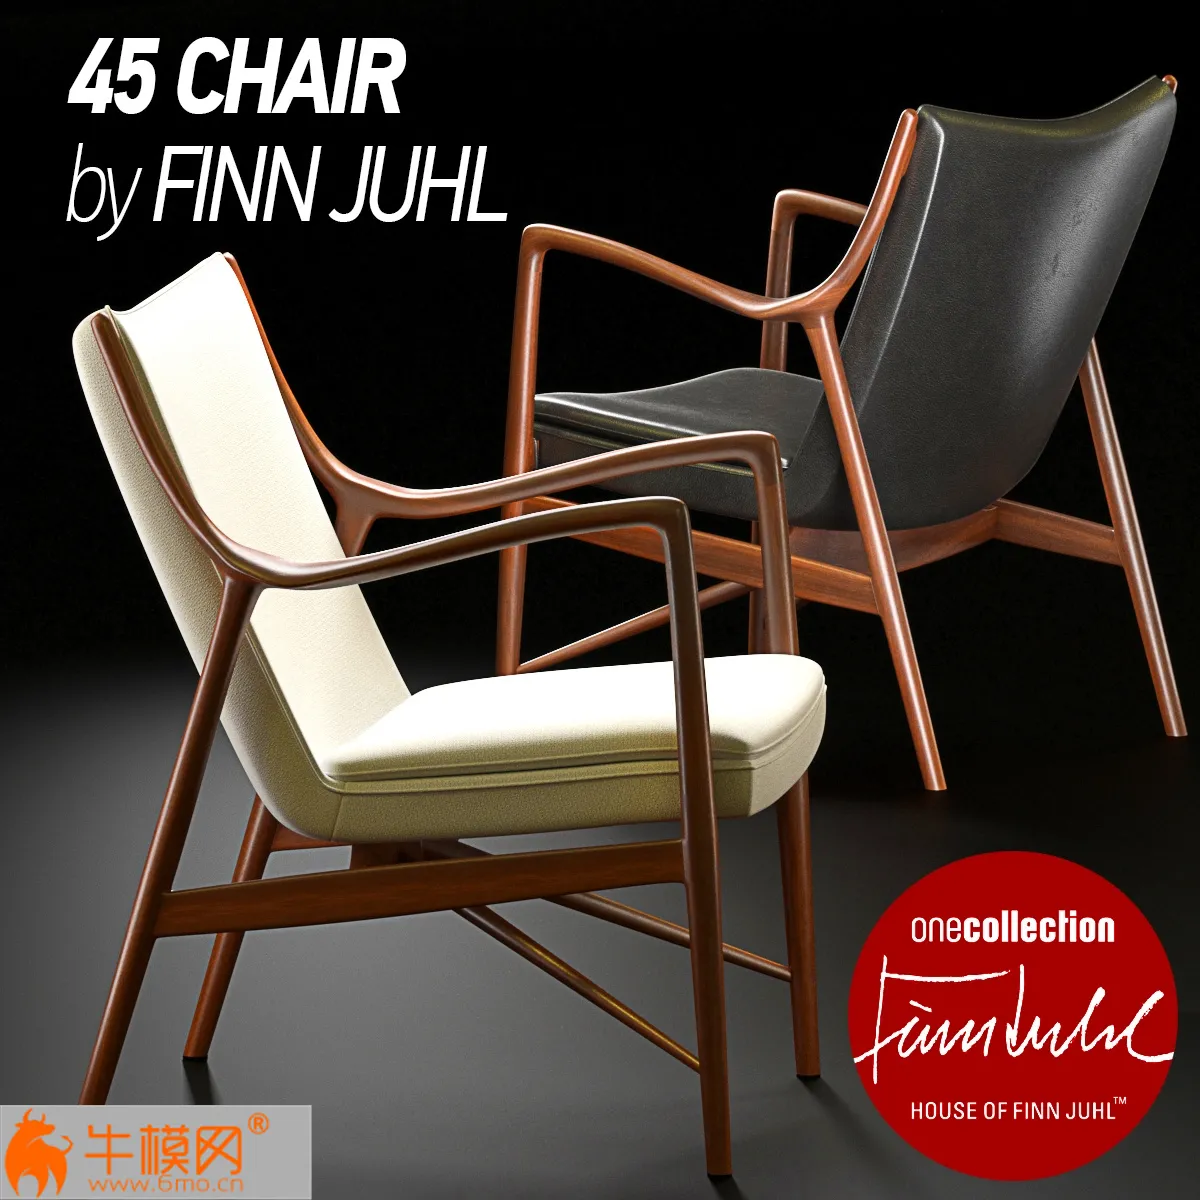 45 Chair by Finn Juhl – 3905